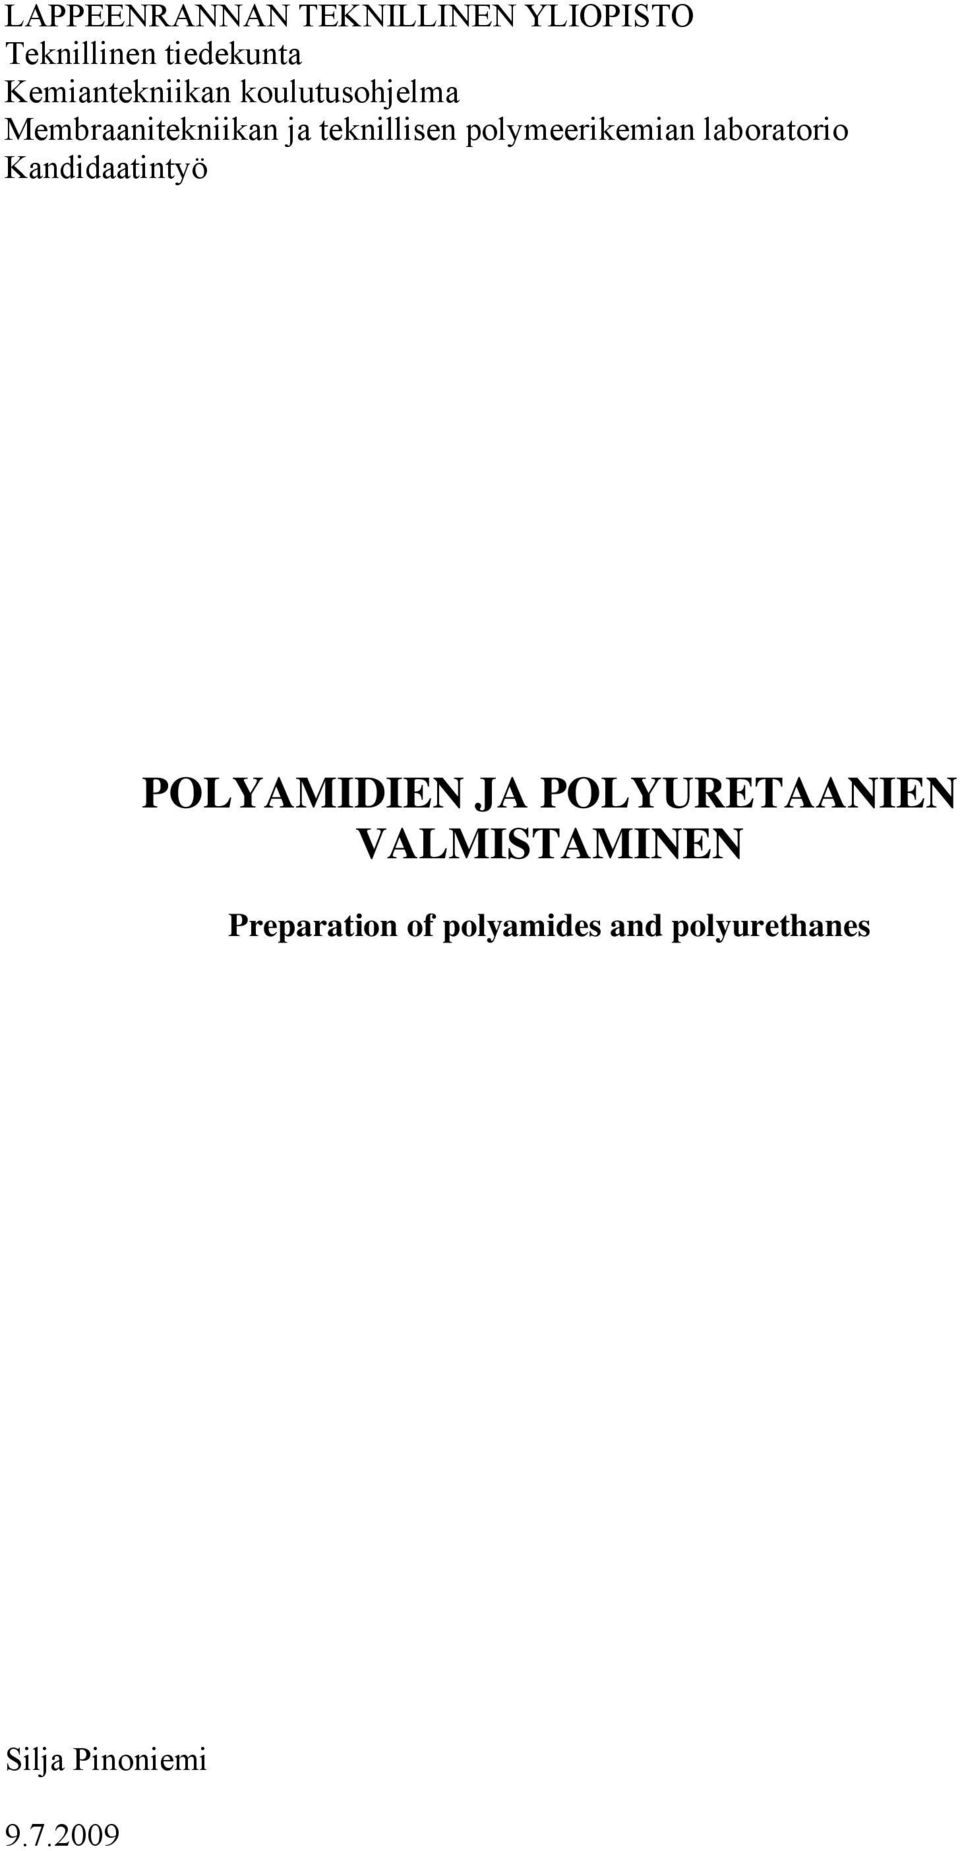 polymeerikemian laboratorio Kandidaatintyö POLYAMIDIEN JA